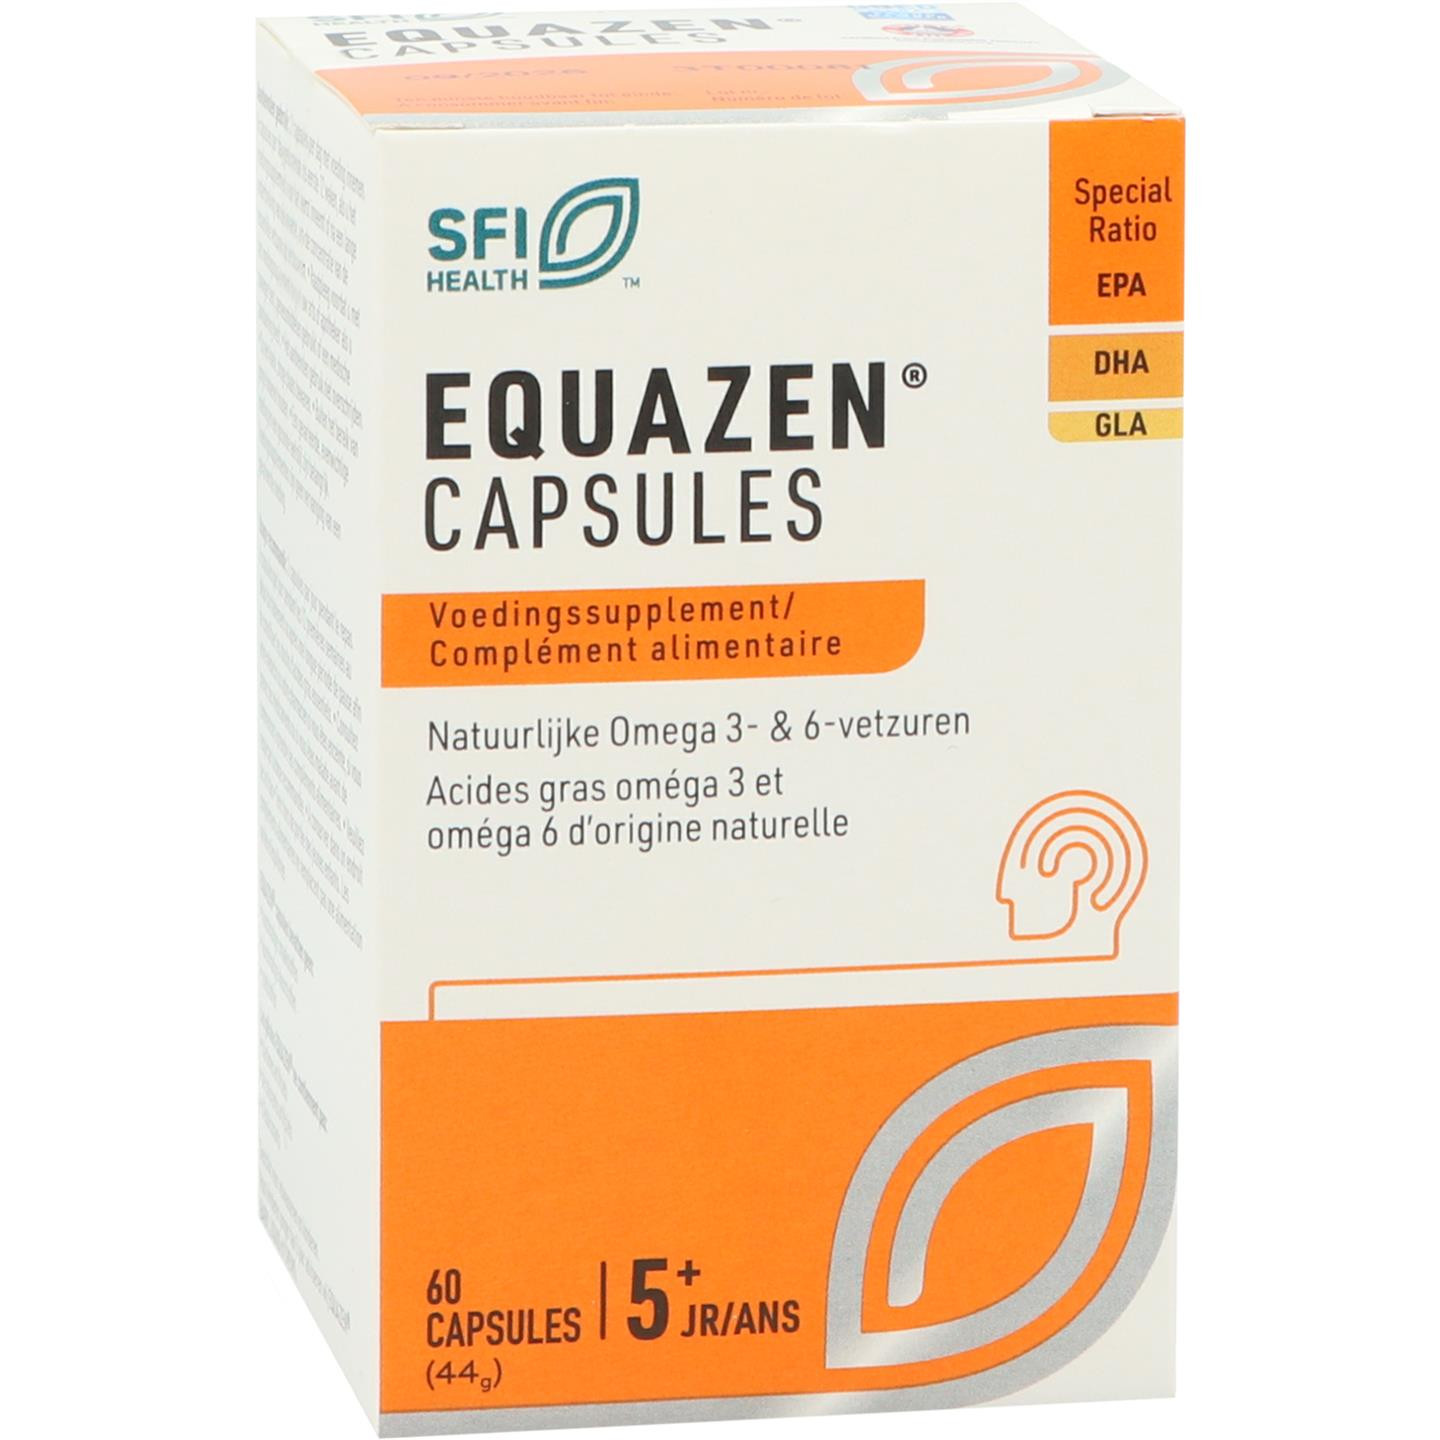 Equazen capsules